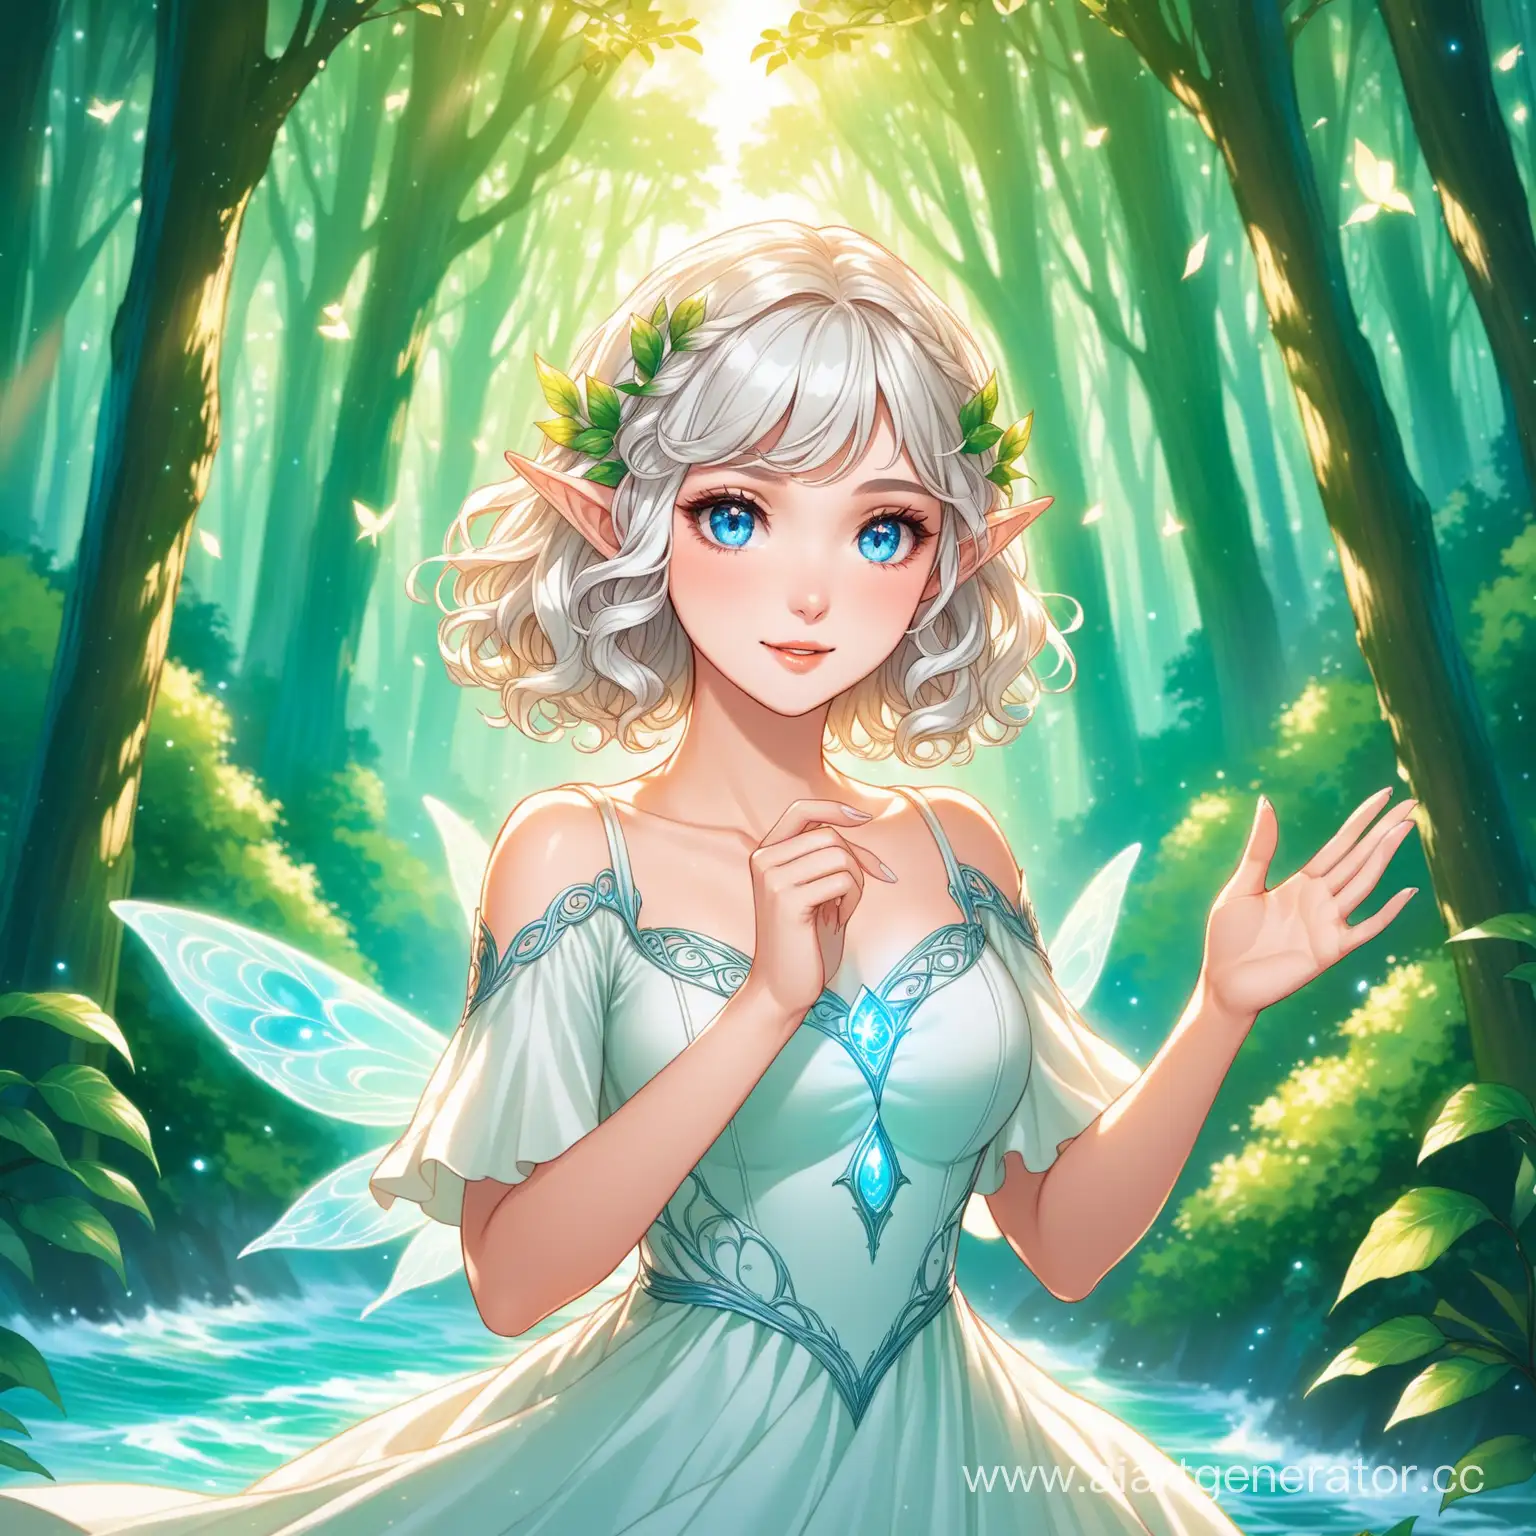 Девушка со светлыми кудрявыми короткими волосами и эльфийскими ушами, с голубыми глазами в белом платье, с блестящим макияжем на фоне сказочного леса машет рукой